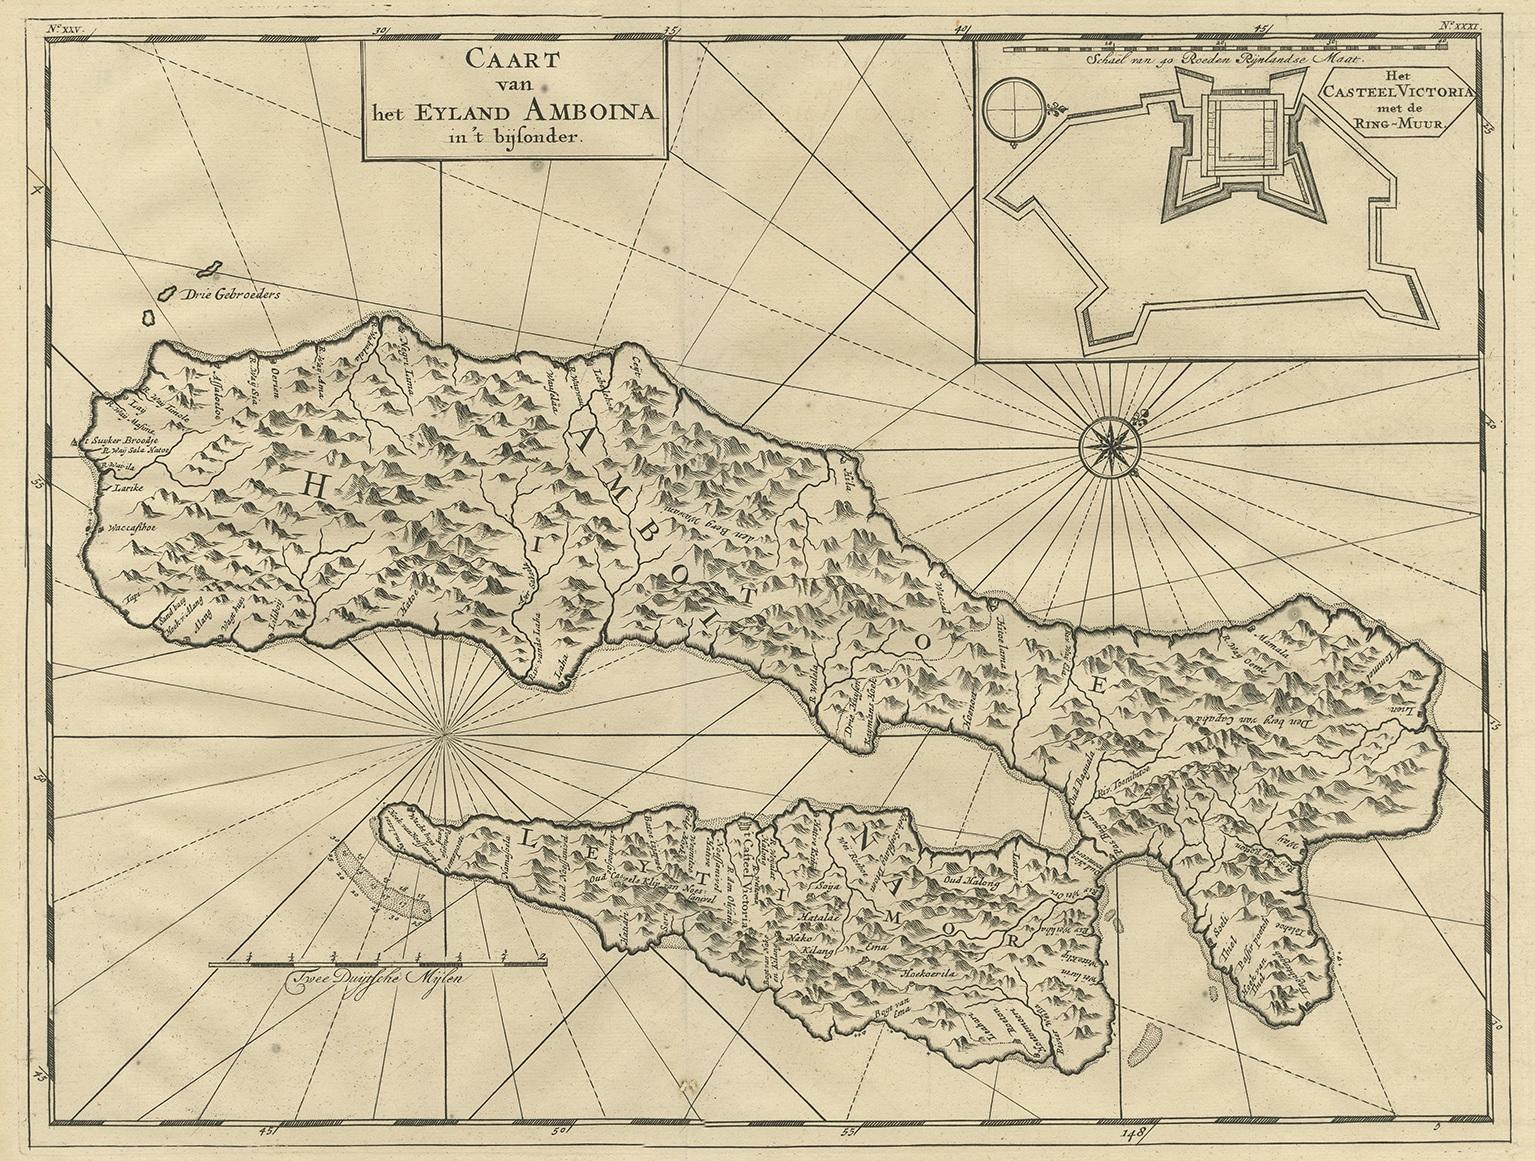 Antike Karte mit dem Titel 'Caart van het Eyland Amboina in 't bijsonder'. Karte der Inseln Ambon und Timor, einer der Molukkeninseln, Indonesien, mit einer Darstellung der Burg Victoria mit der Ringmauer. Dieser Druck stammt aus 